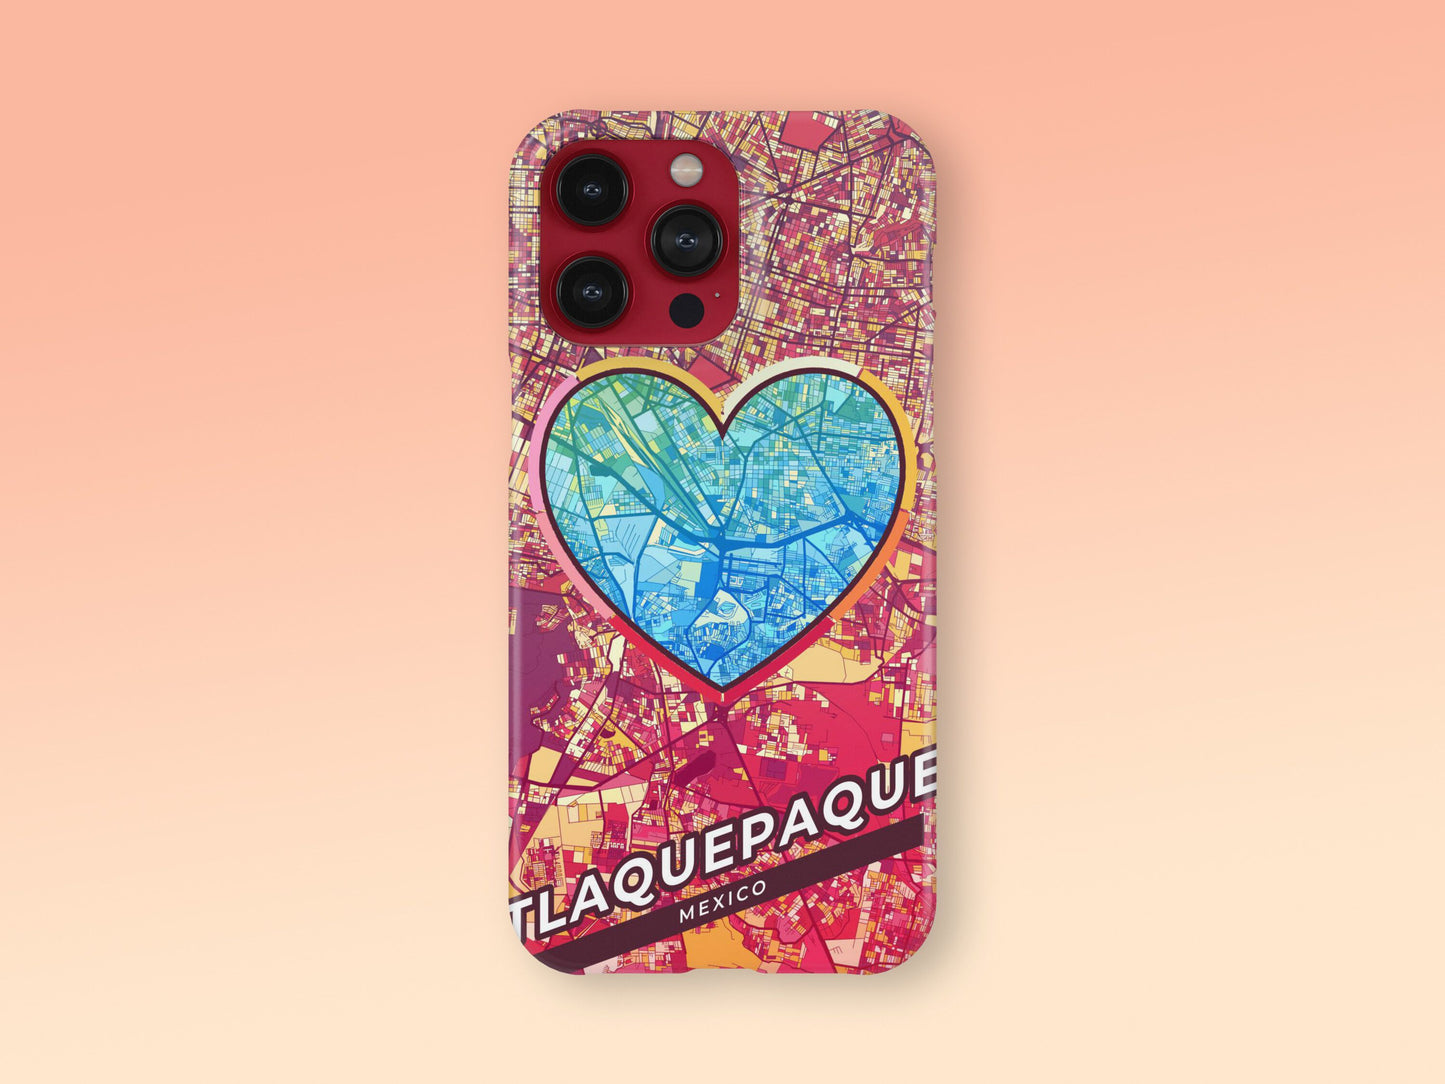 Tlaquepaque Mexico slim phone case with colorful icon 2